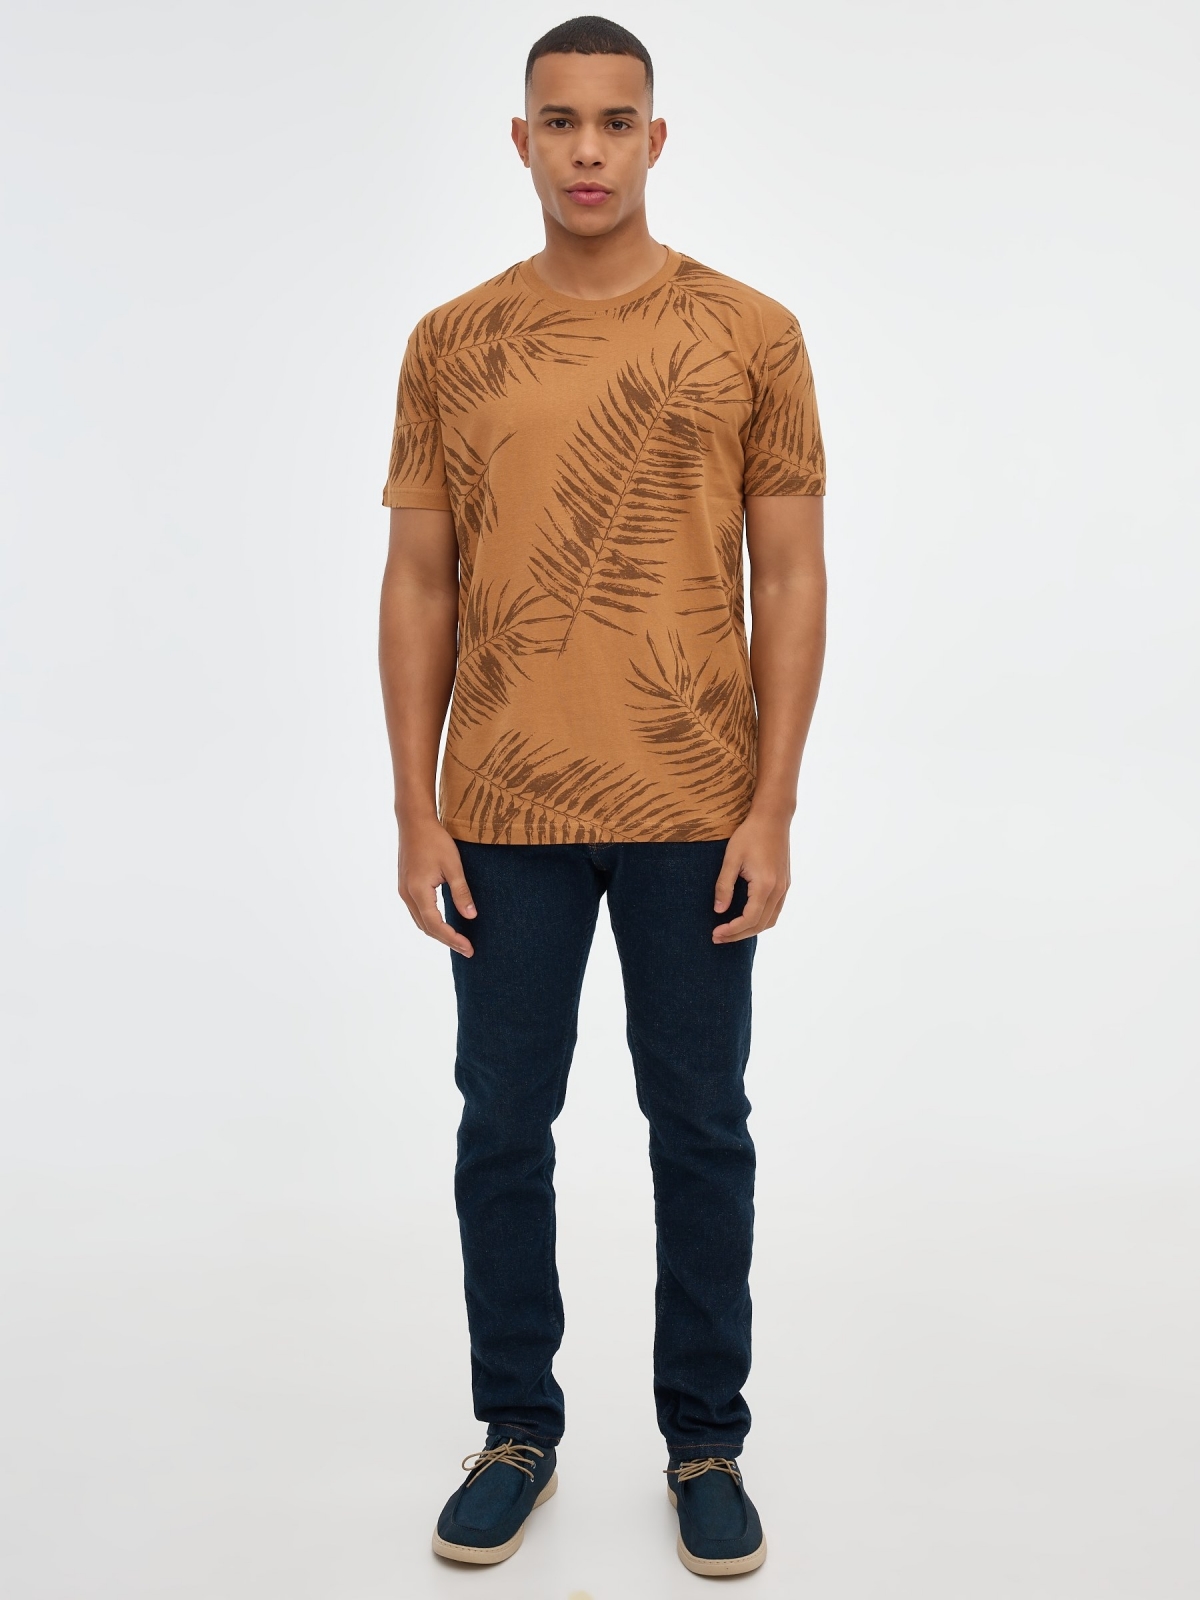 Camiseta print hojas palmeras marrón claro vista general frontal